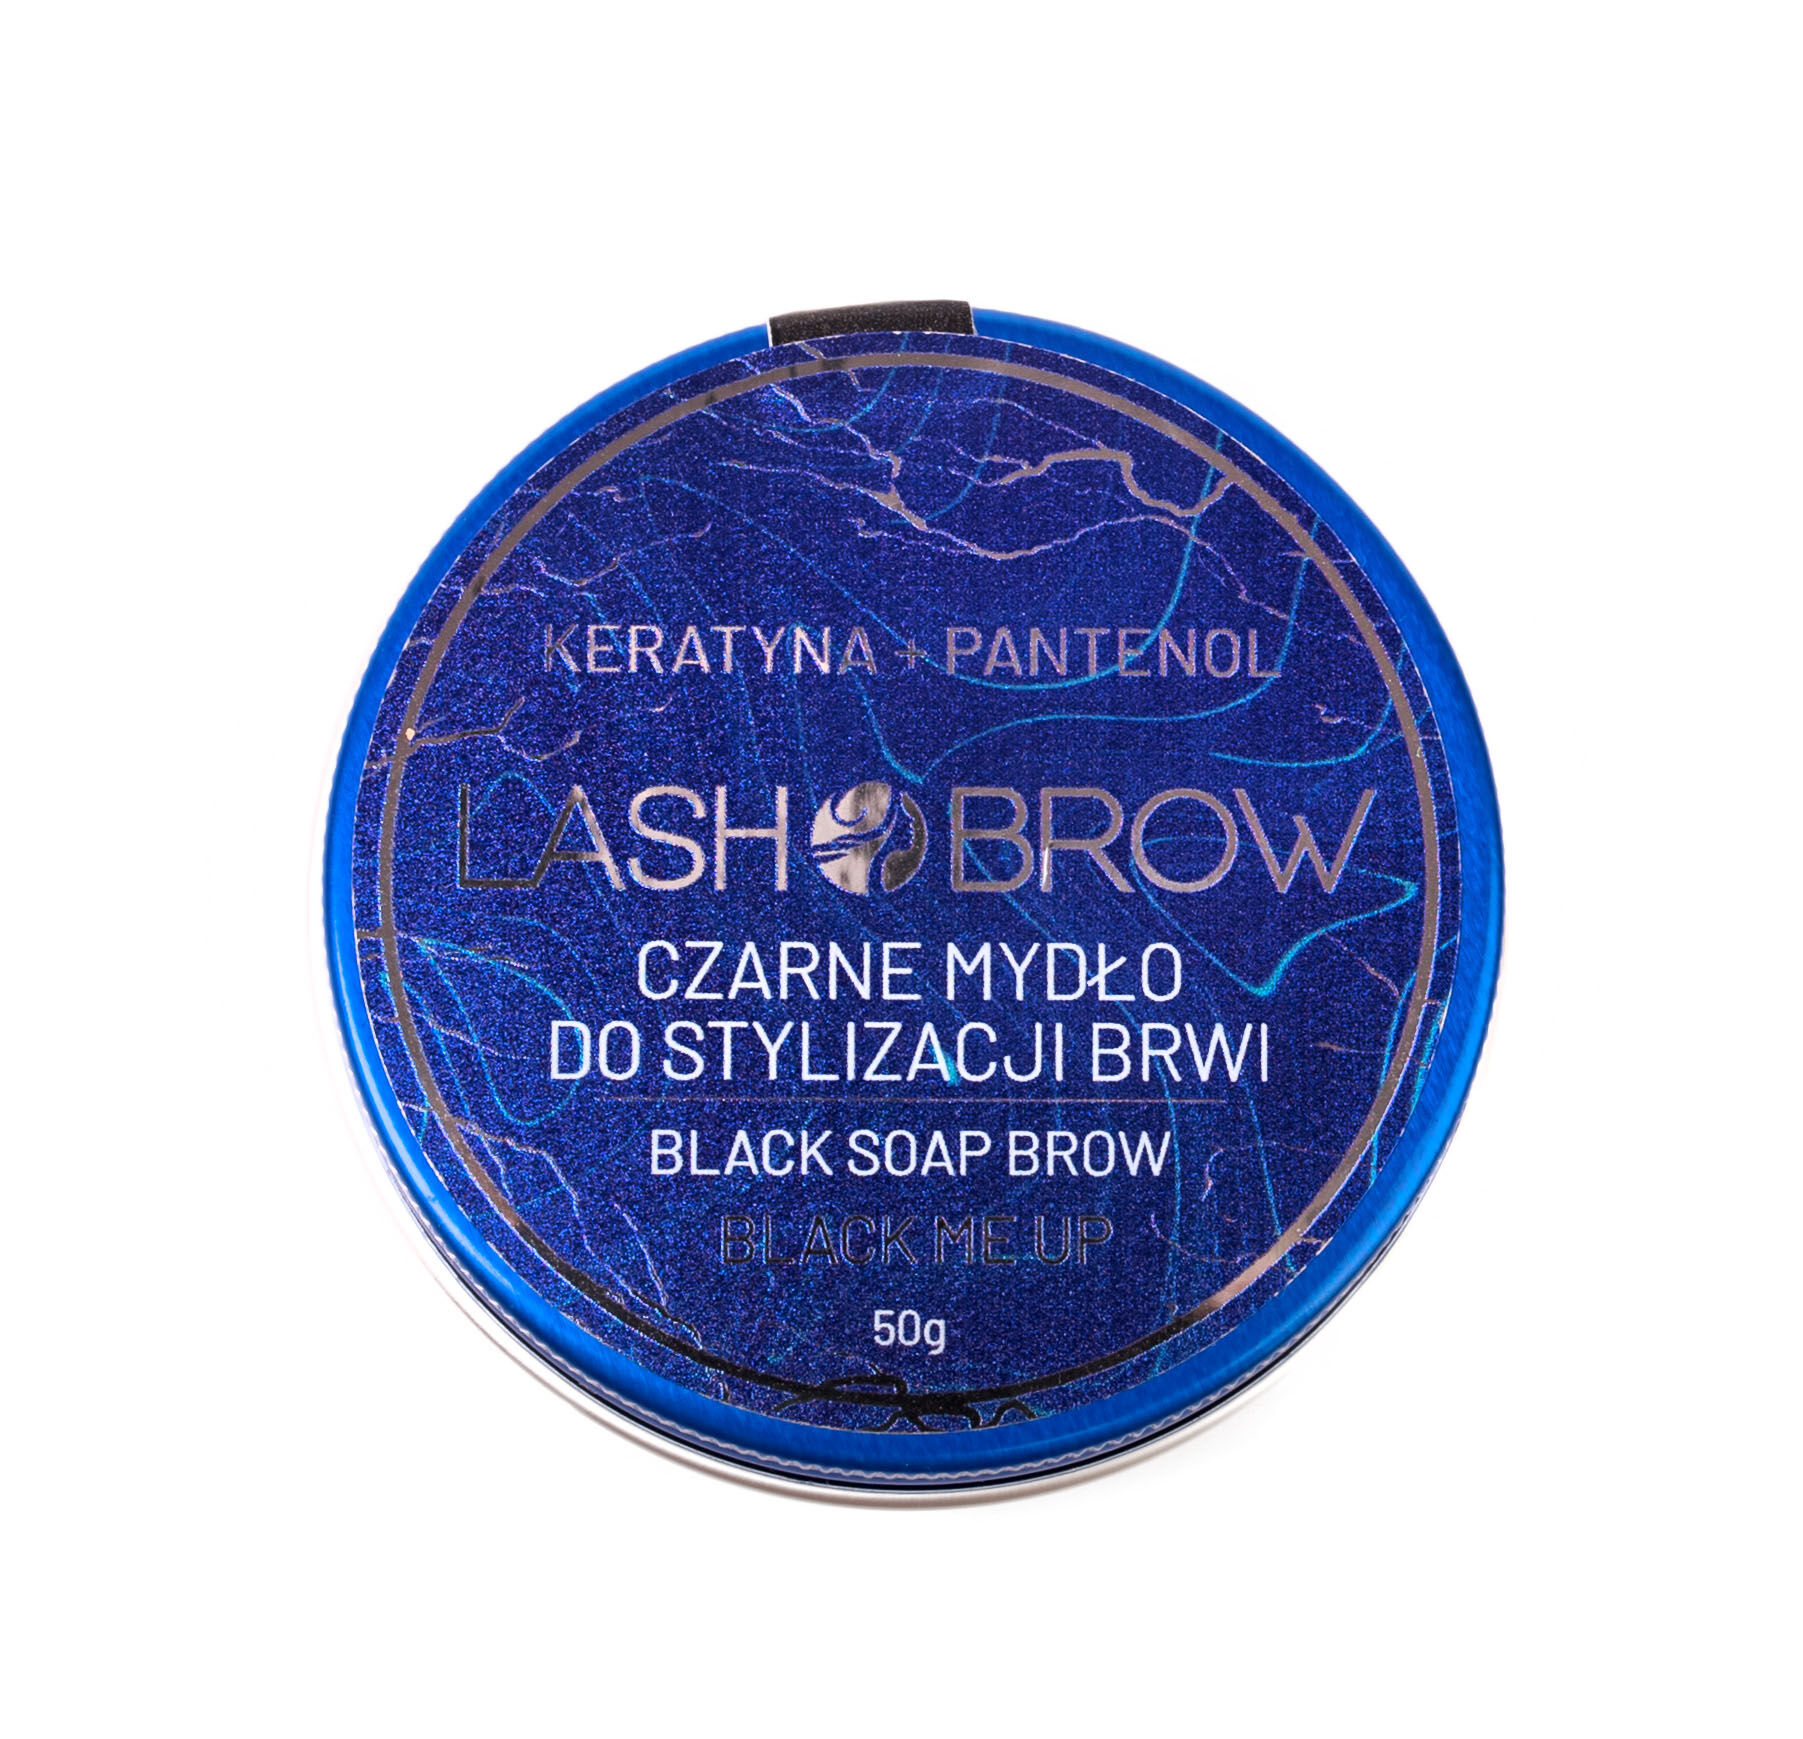 Черное мыло для укладки бровей Lash Brow, 50 гр цена и фото